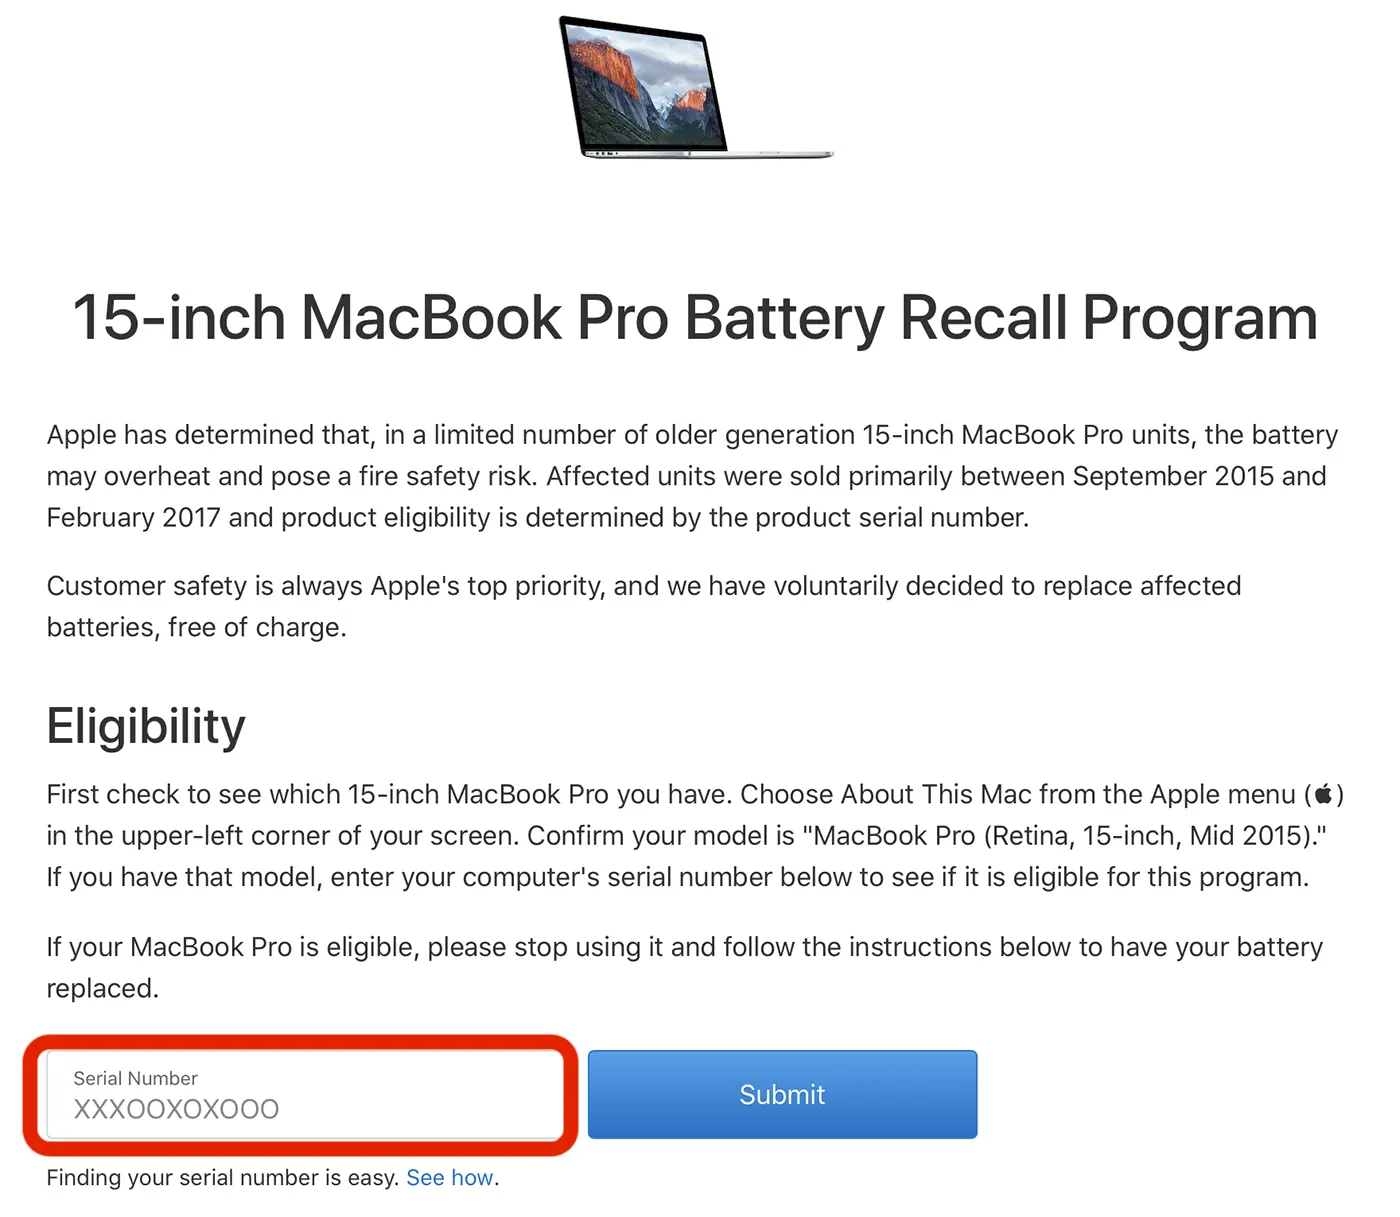 Du kan skifte din MacBook-batteri gratis. Se betingelser